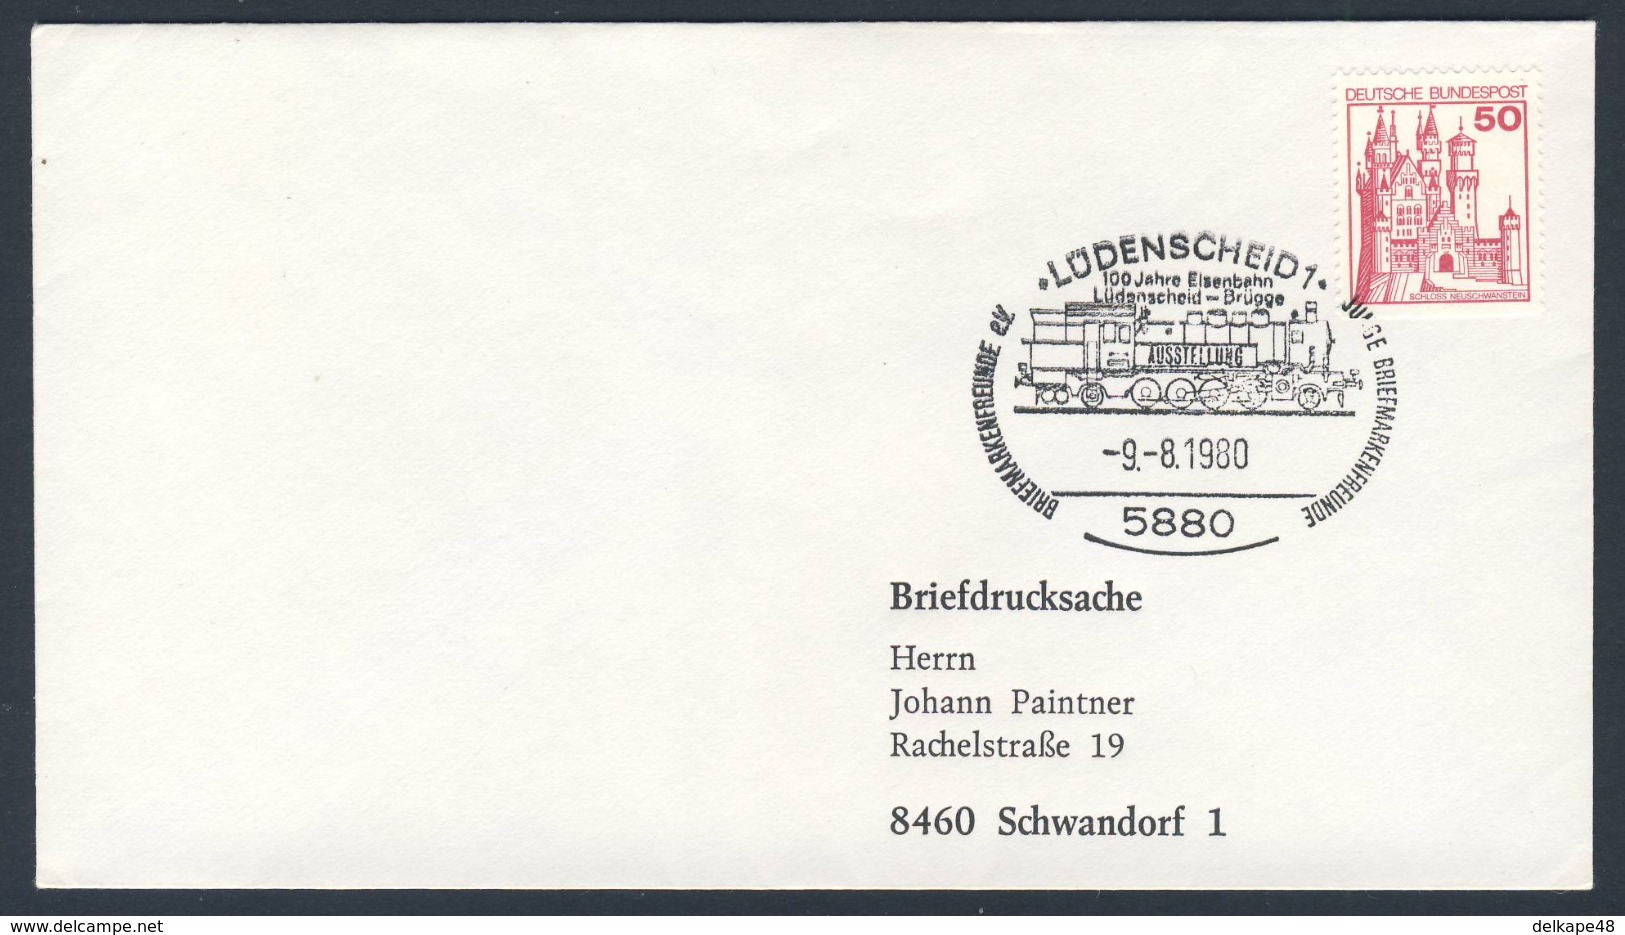 Deutschland Germany 1980 Brief Cover - 100 Jahre Eisenbahn Lüdenscheid - Brügge - Ausstellung / Railway - Exhibition - Treinen